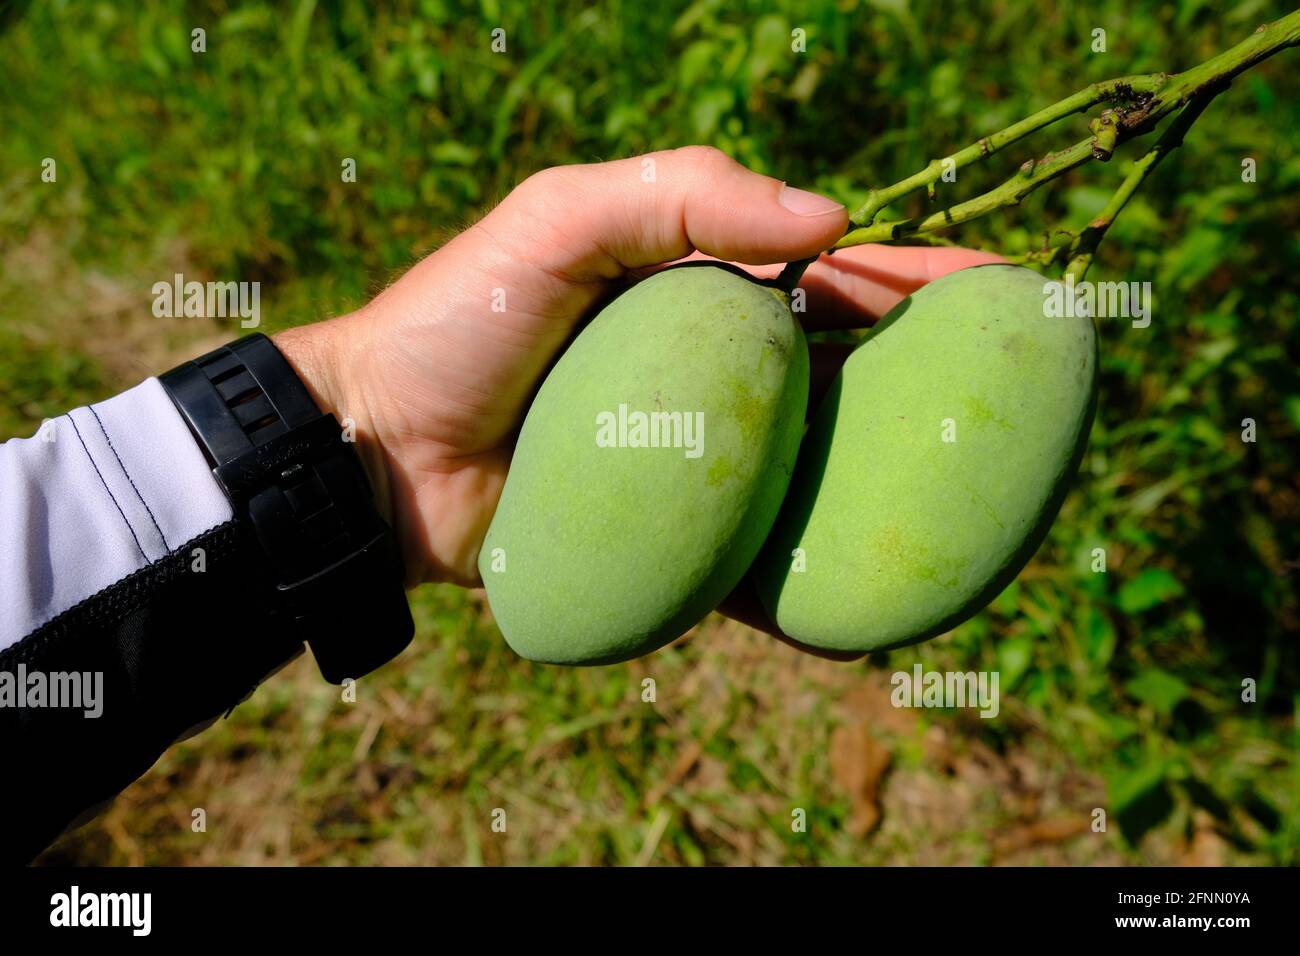 Indonesien Anambas-Inseln - Mango-Früchte in der Hand - Mangifera indica Stockfoto